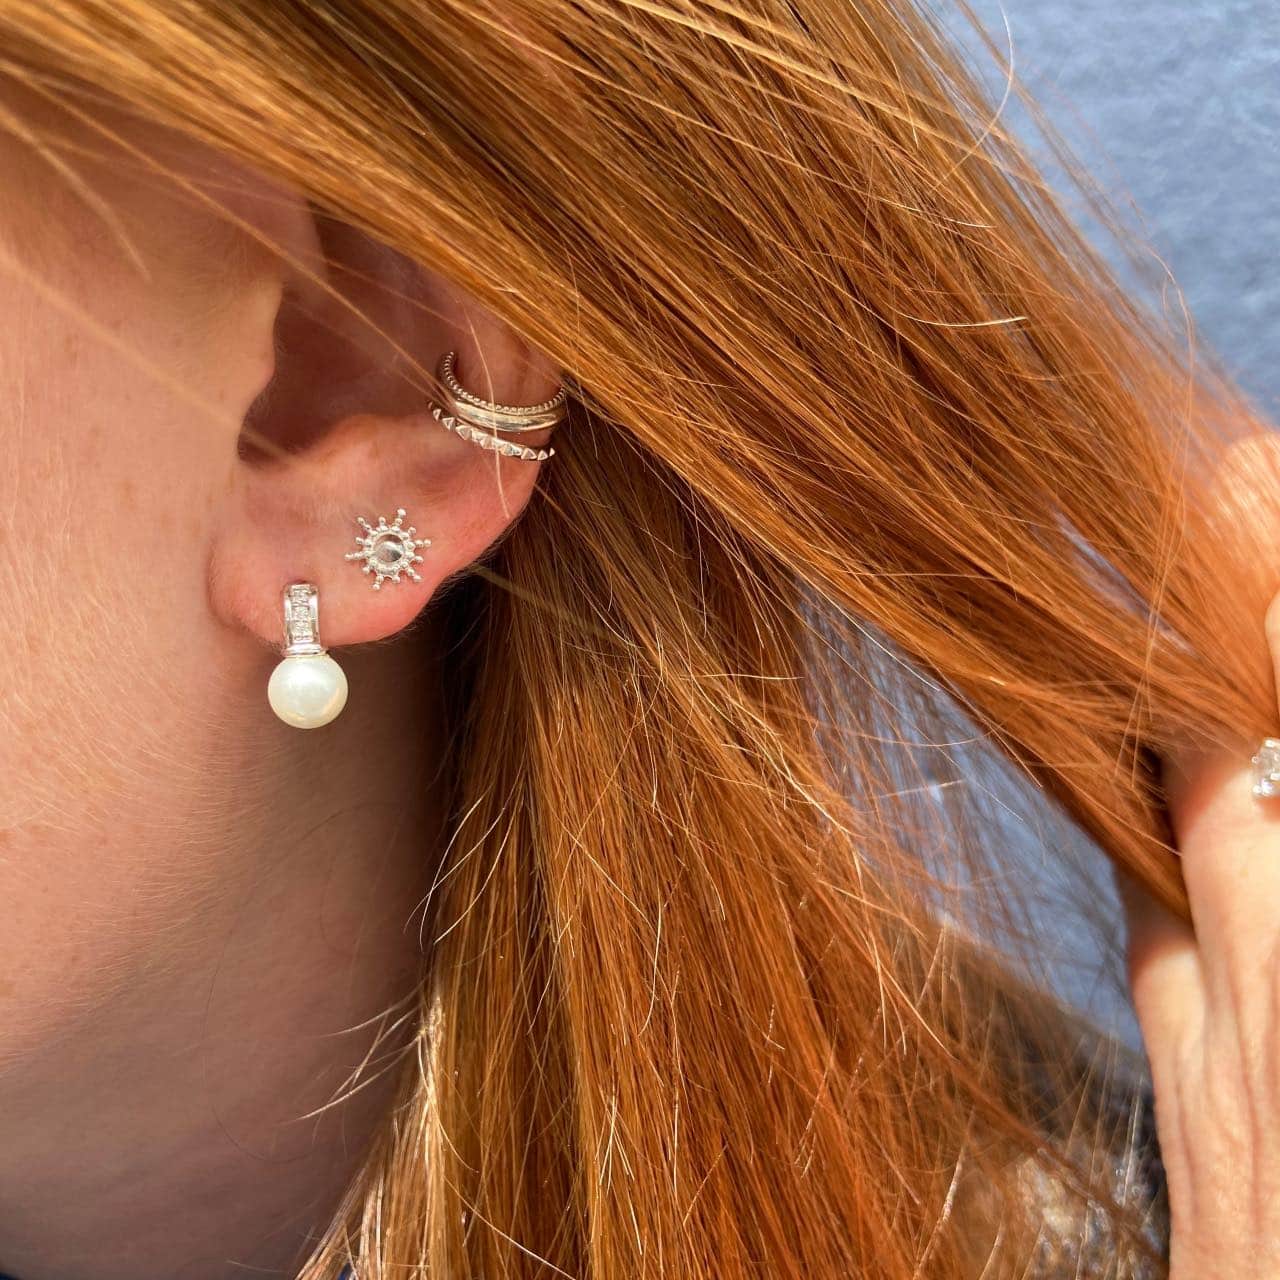 Boucles d'oreilles perle et argent portées par une jeune fille aux cheveux roux